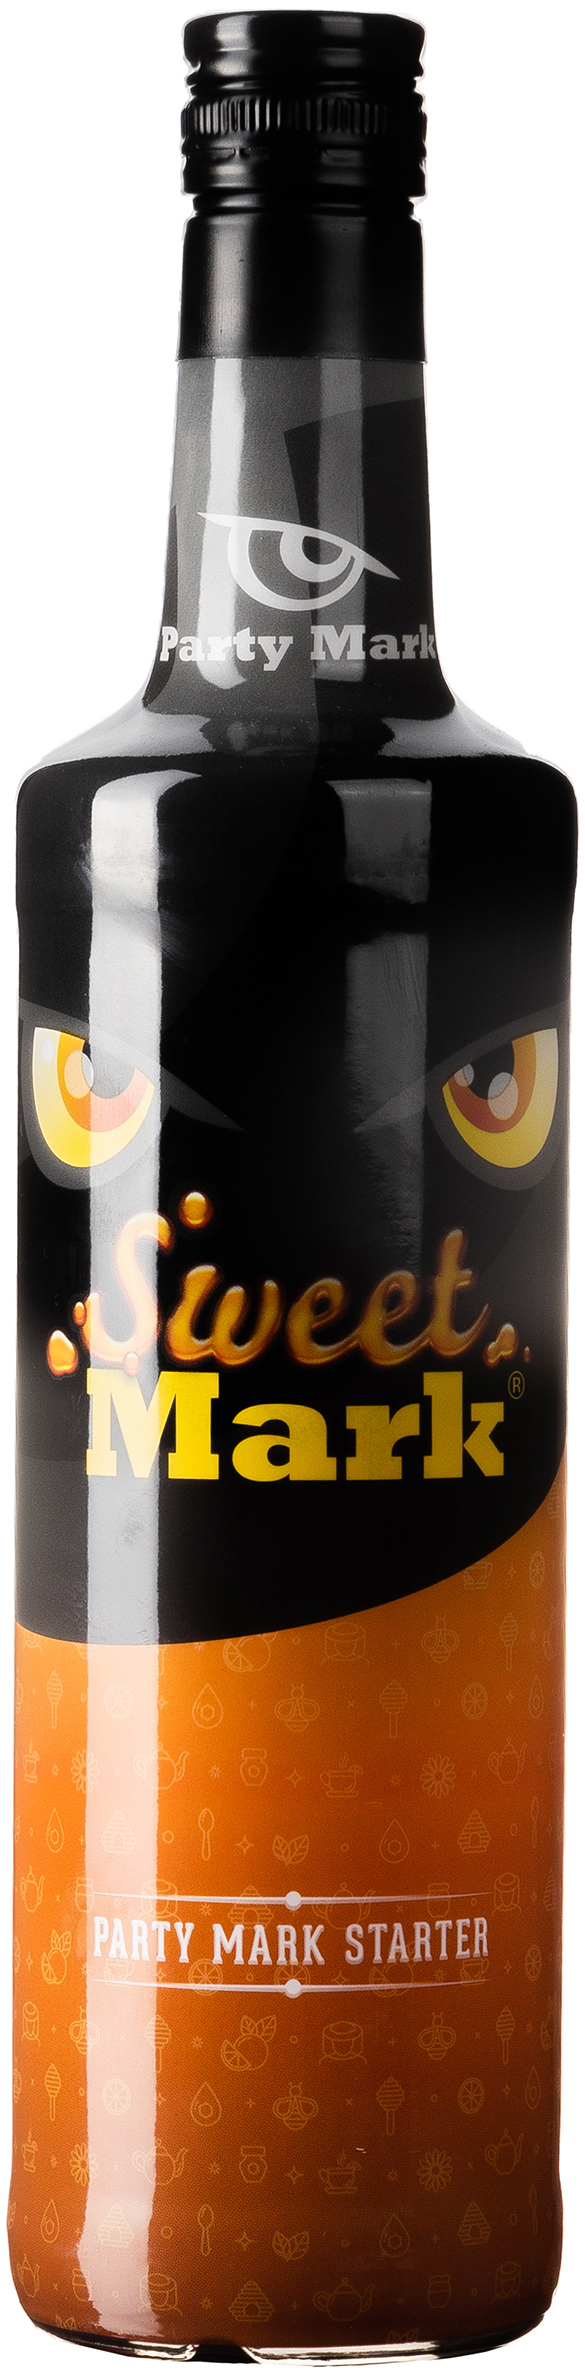 Sweet Mark 20% vol. 0,7L